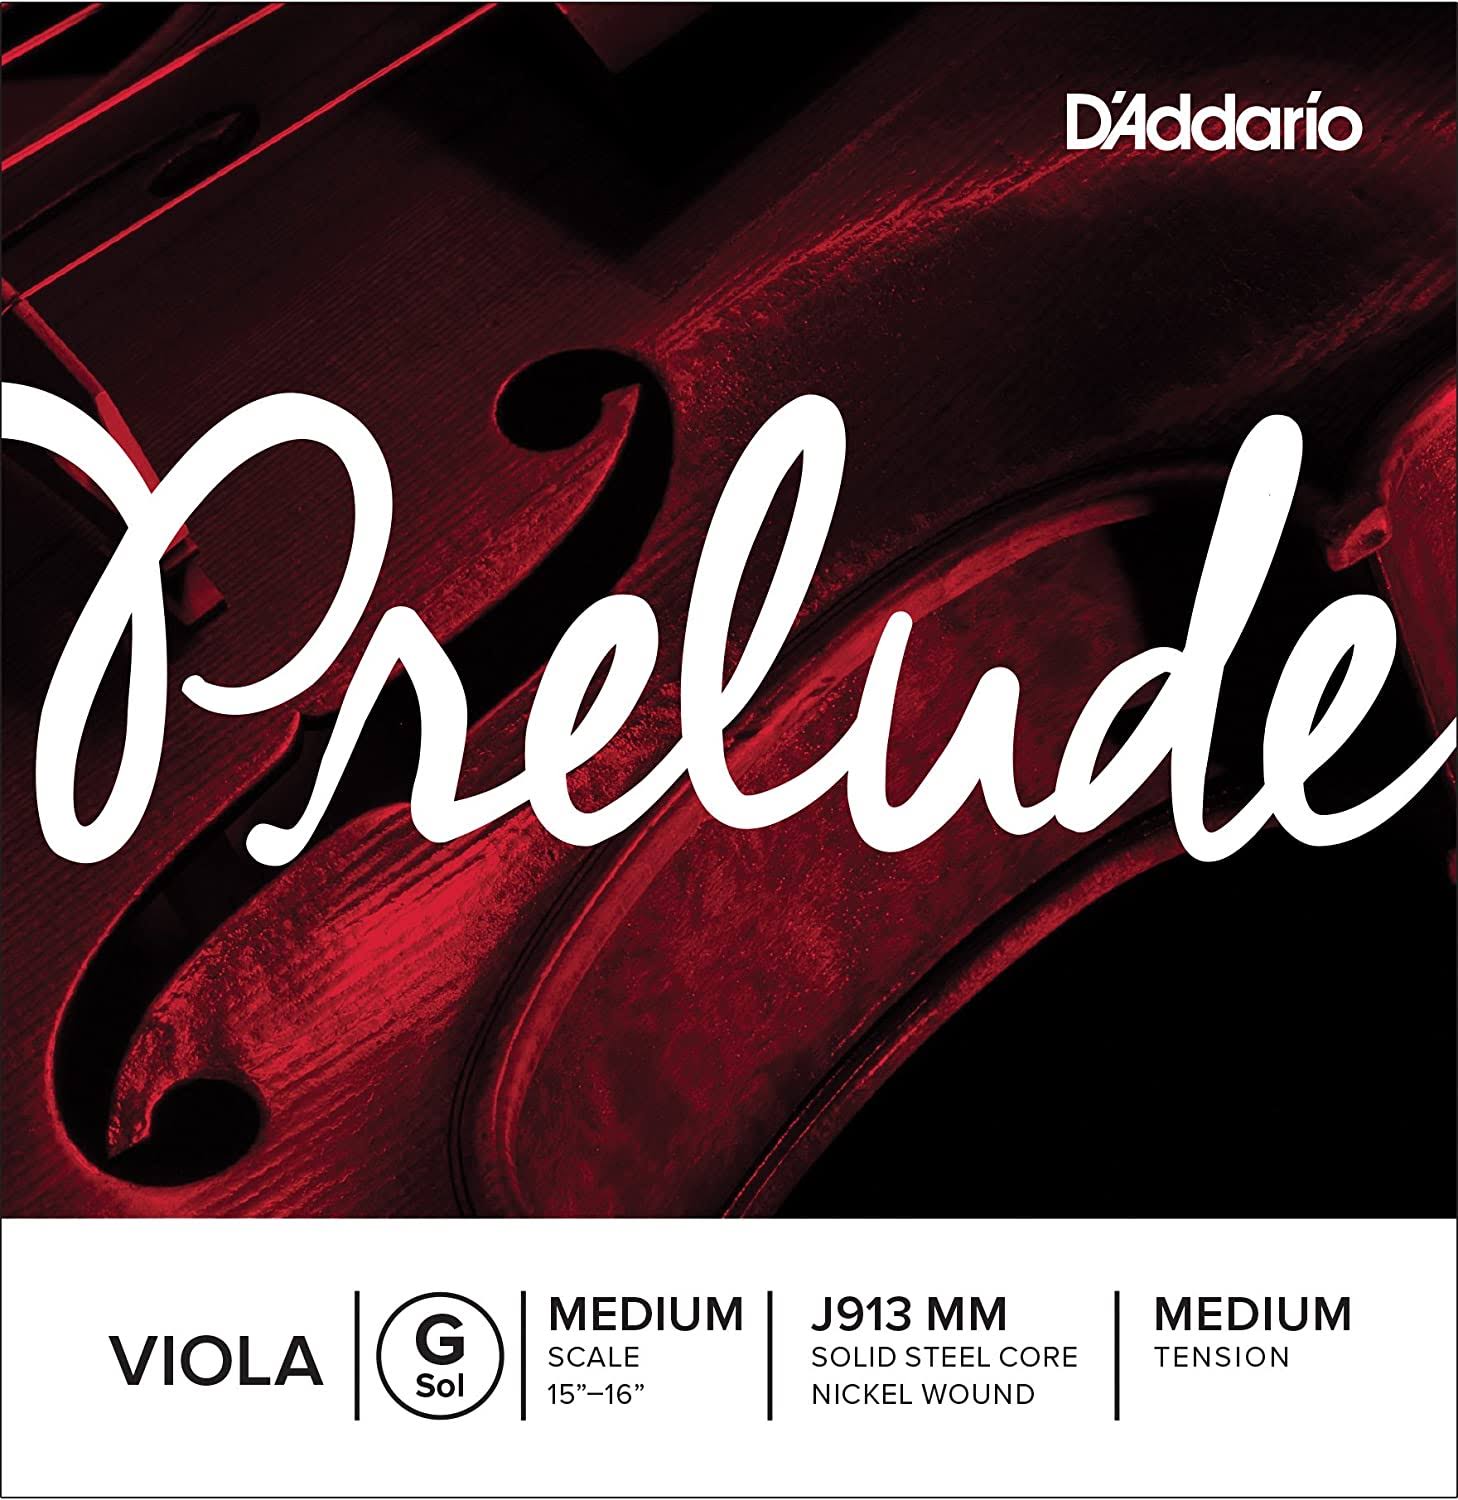 D'Addario Prelude Viola Single G String - Medium Tension